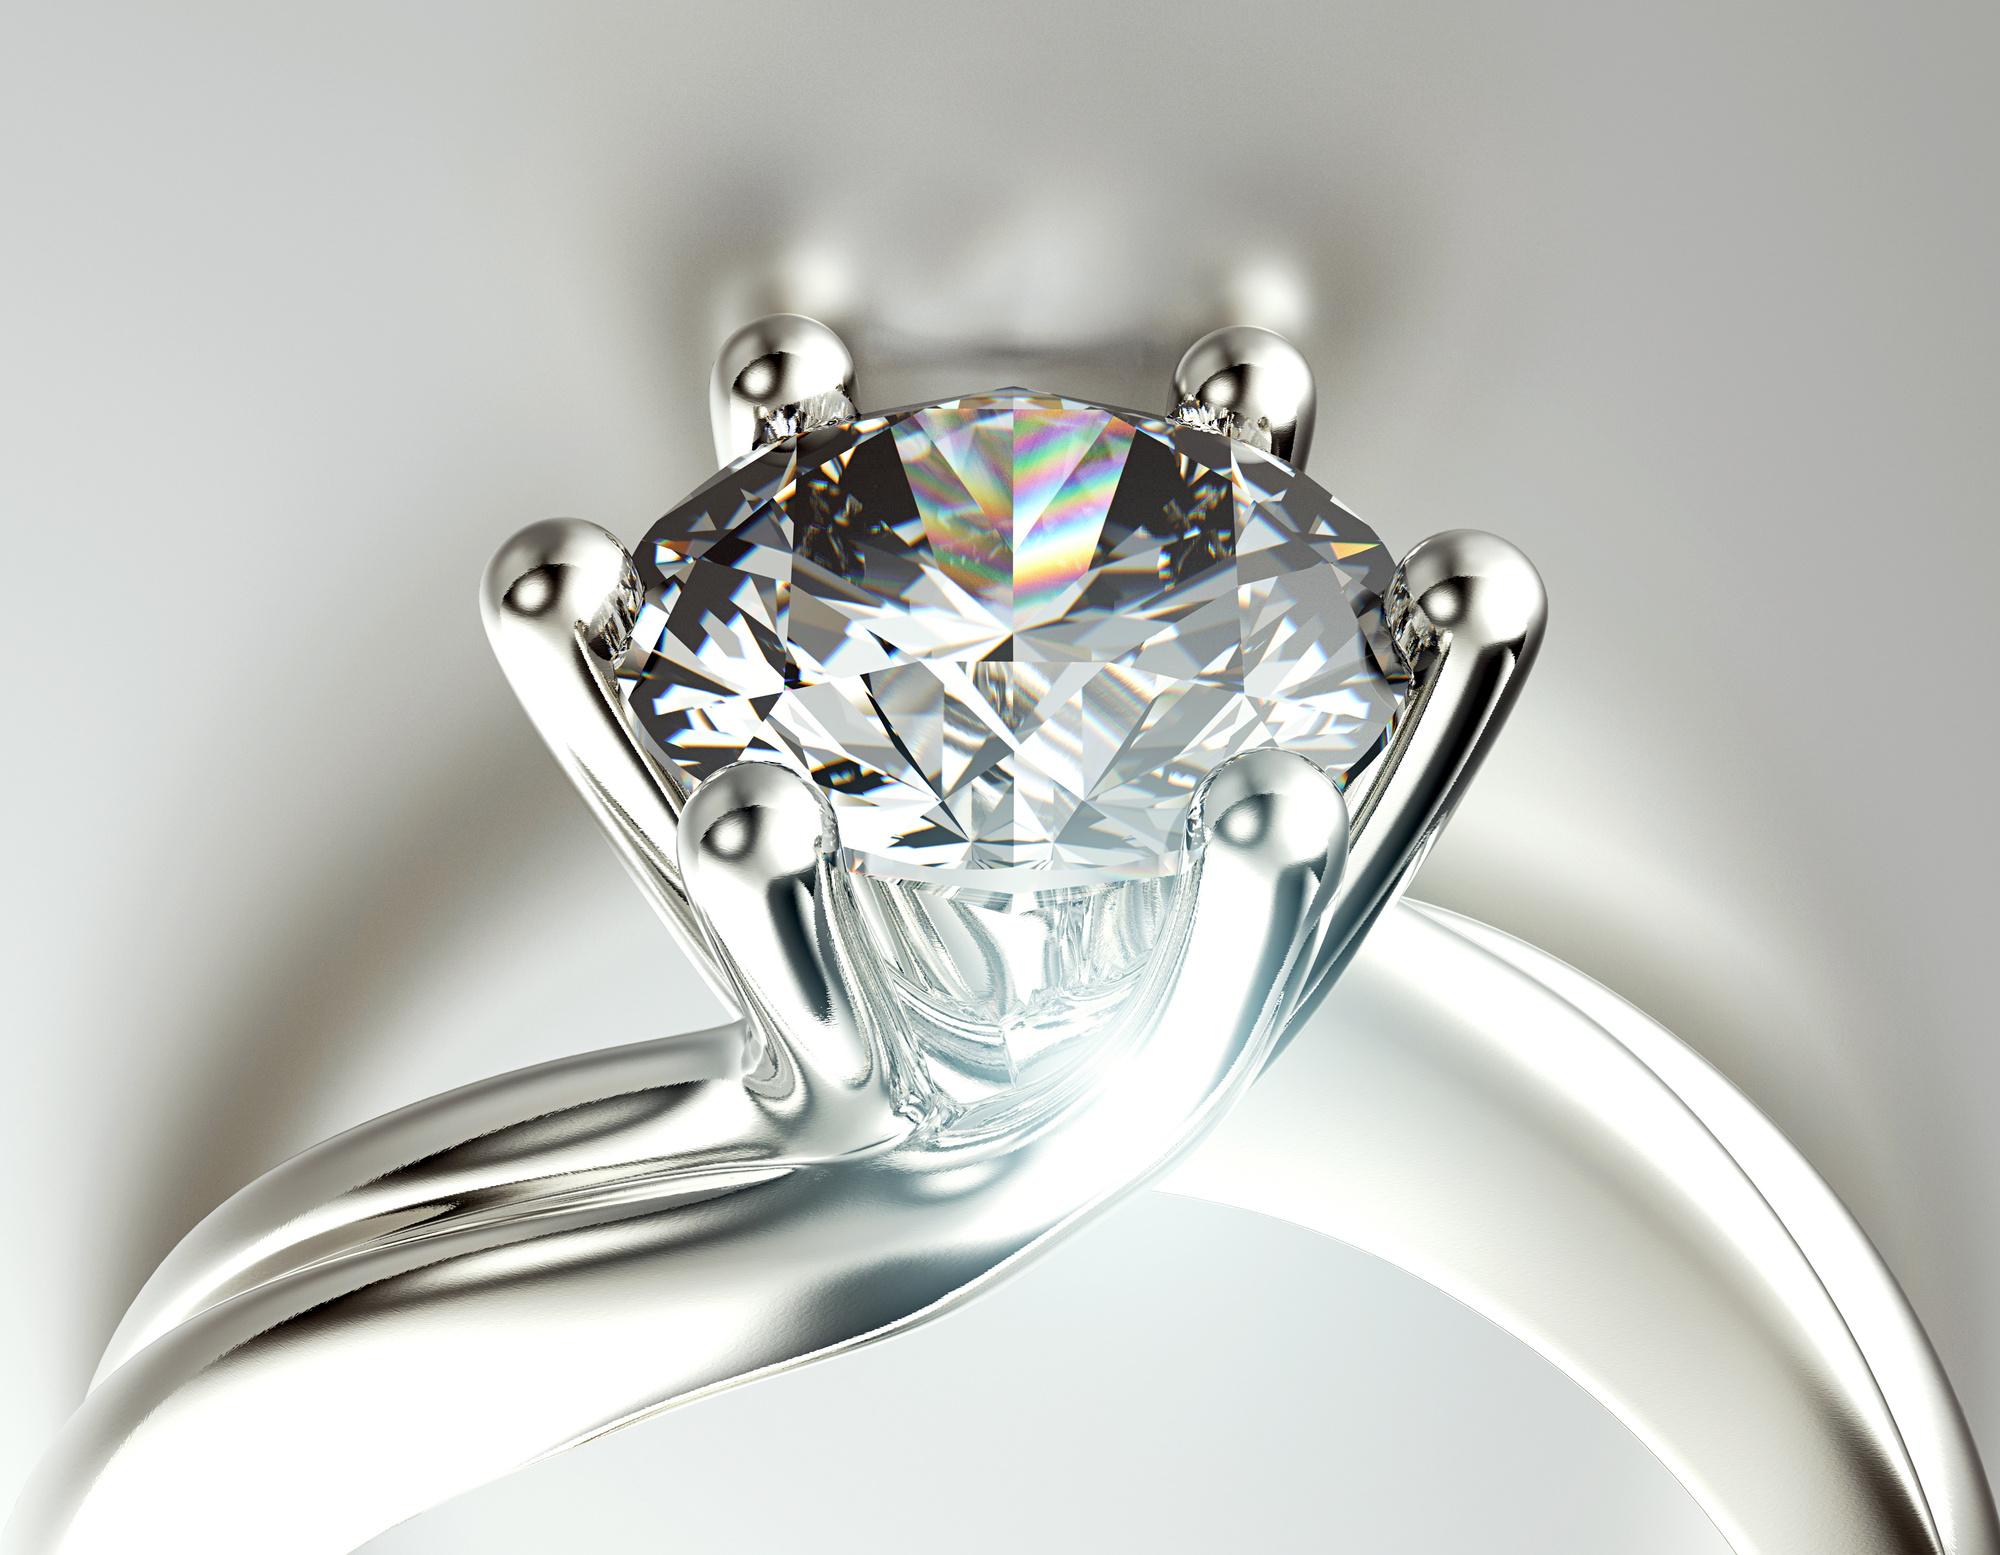 How To Spot A Diamond - Tips & Tricks to Identify Gems 